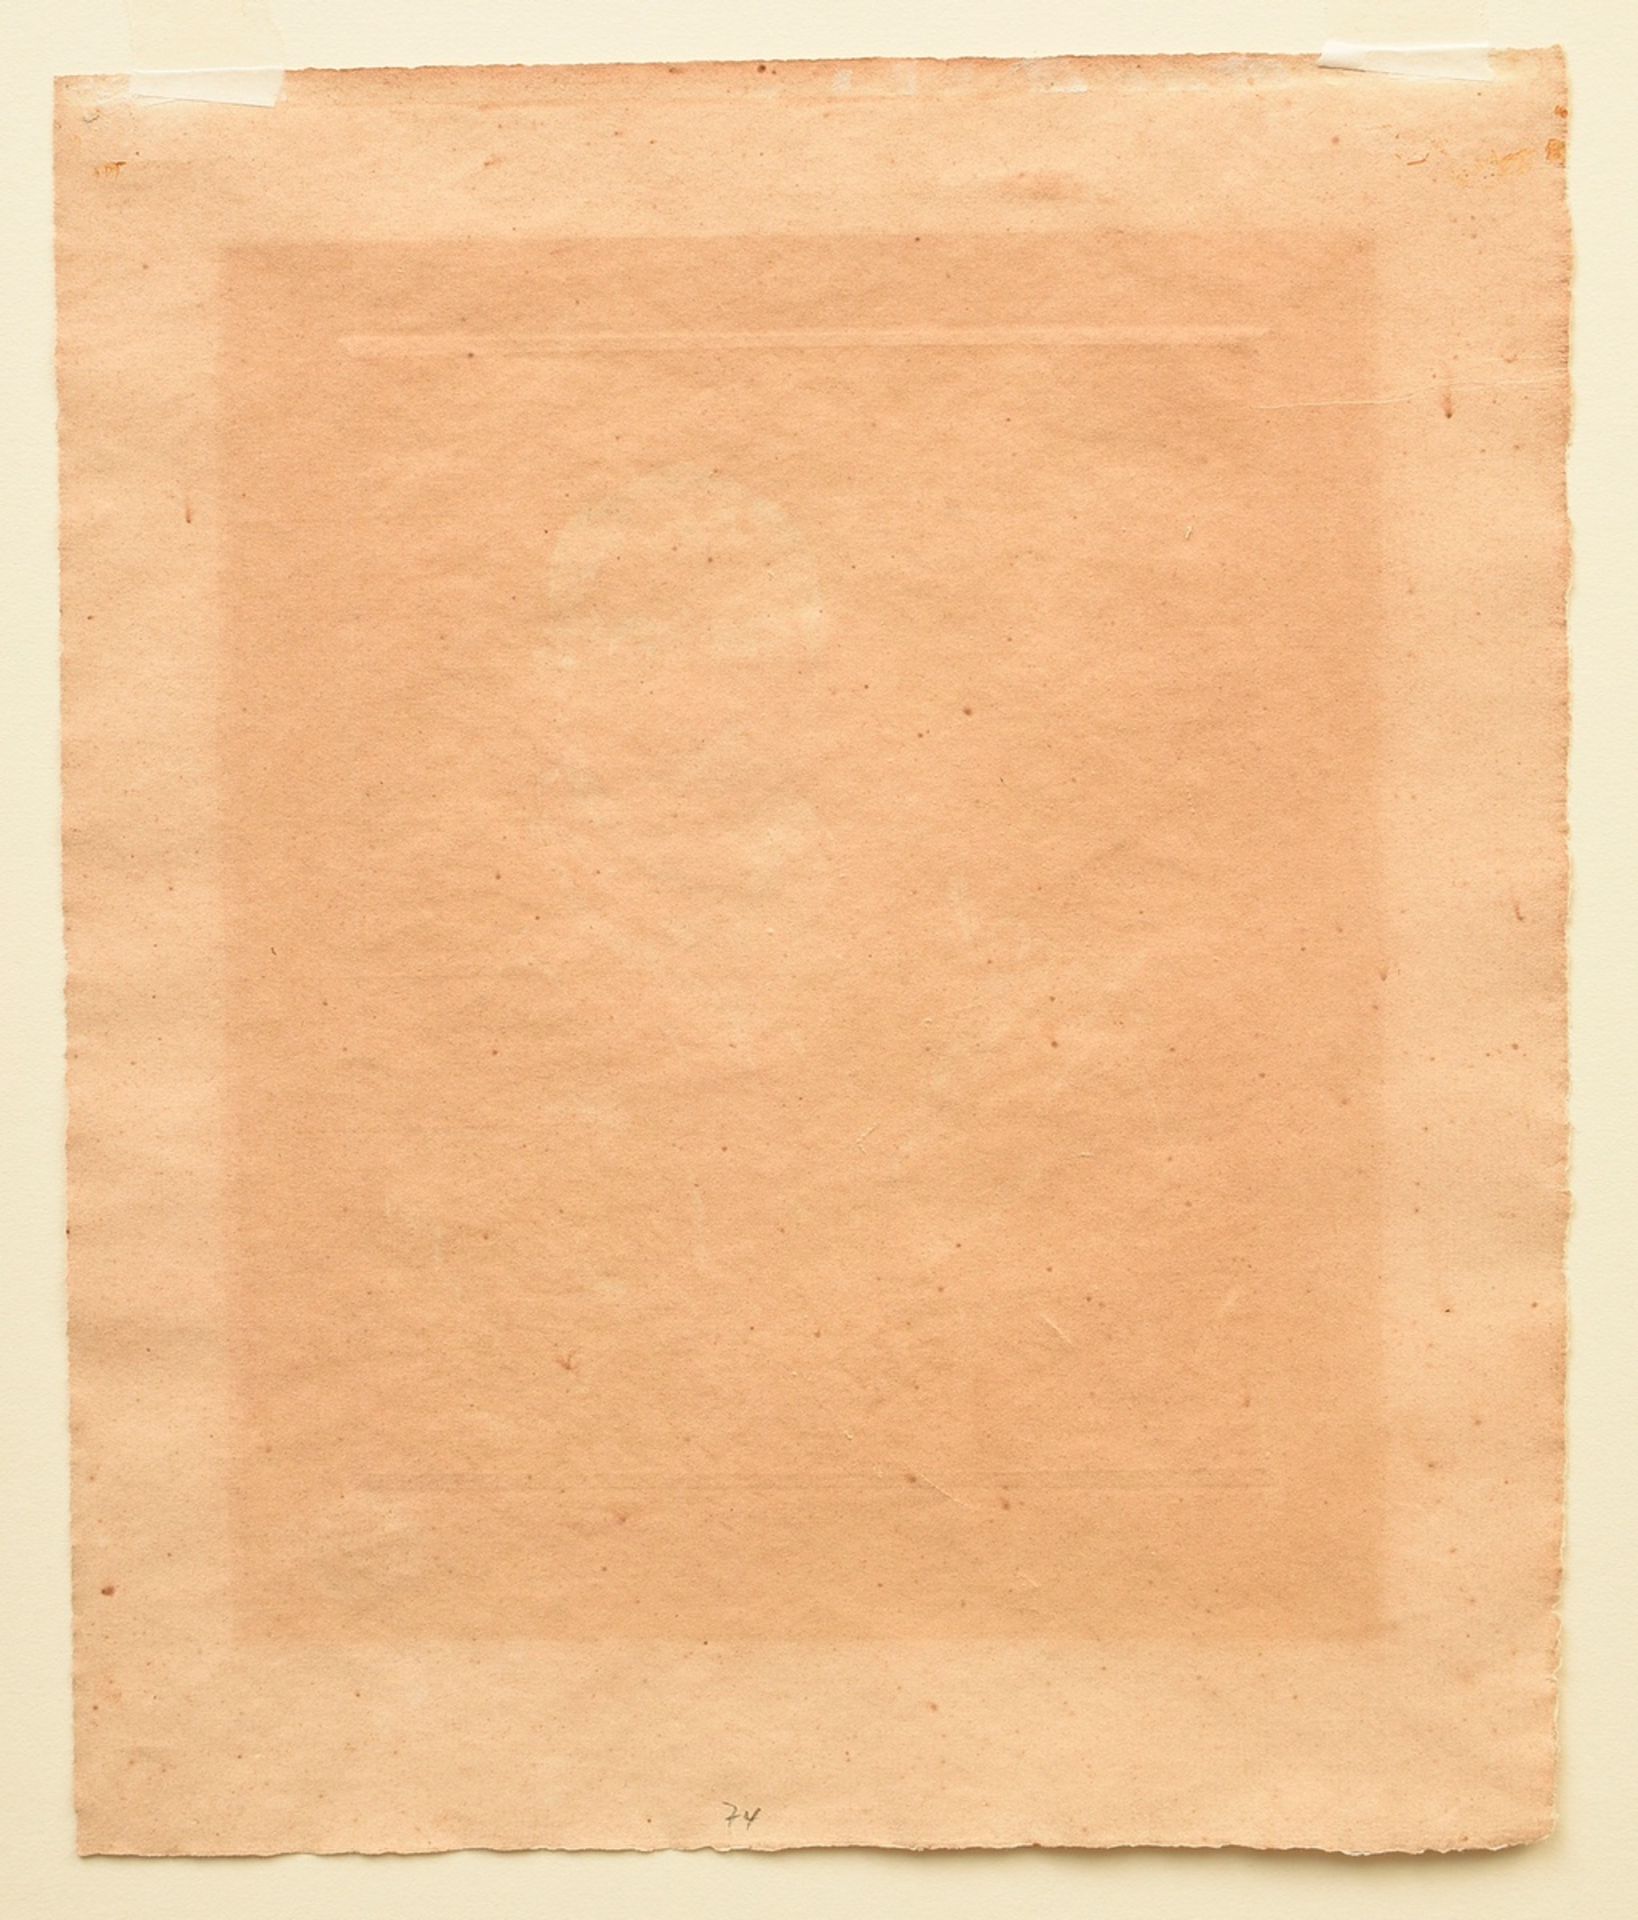 Corinth, Lovis (1858-1925) "Selbstbildnis radierend" 1909, Radierung, u.r. sign., PM 19,5x15,5cm, B - Bild 4 aus 4